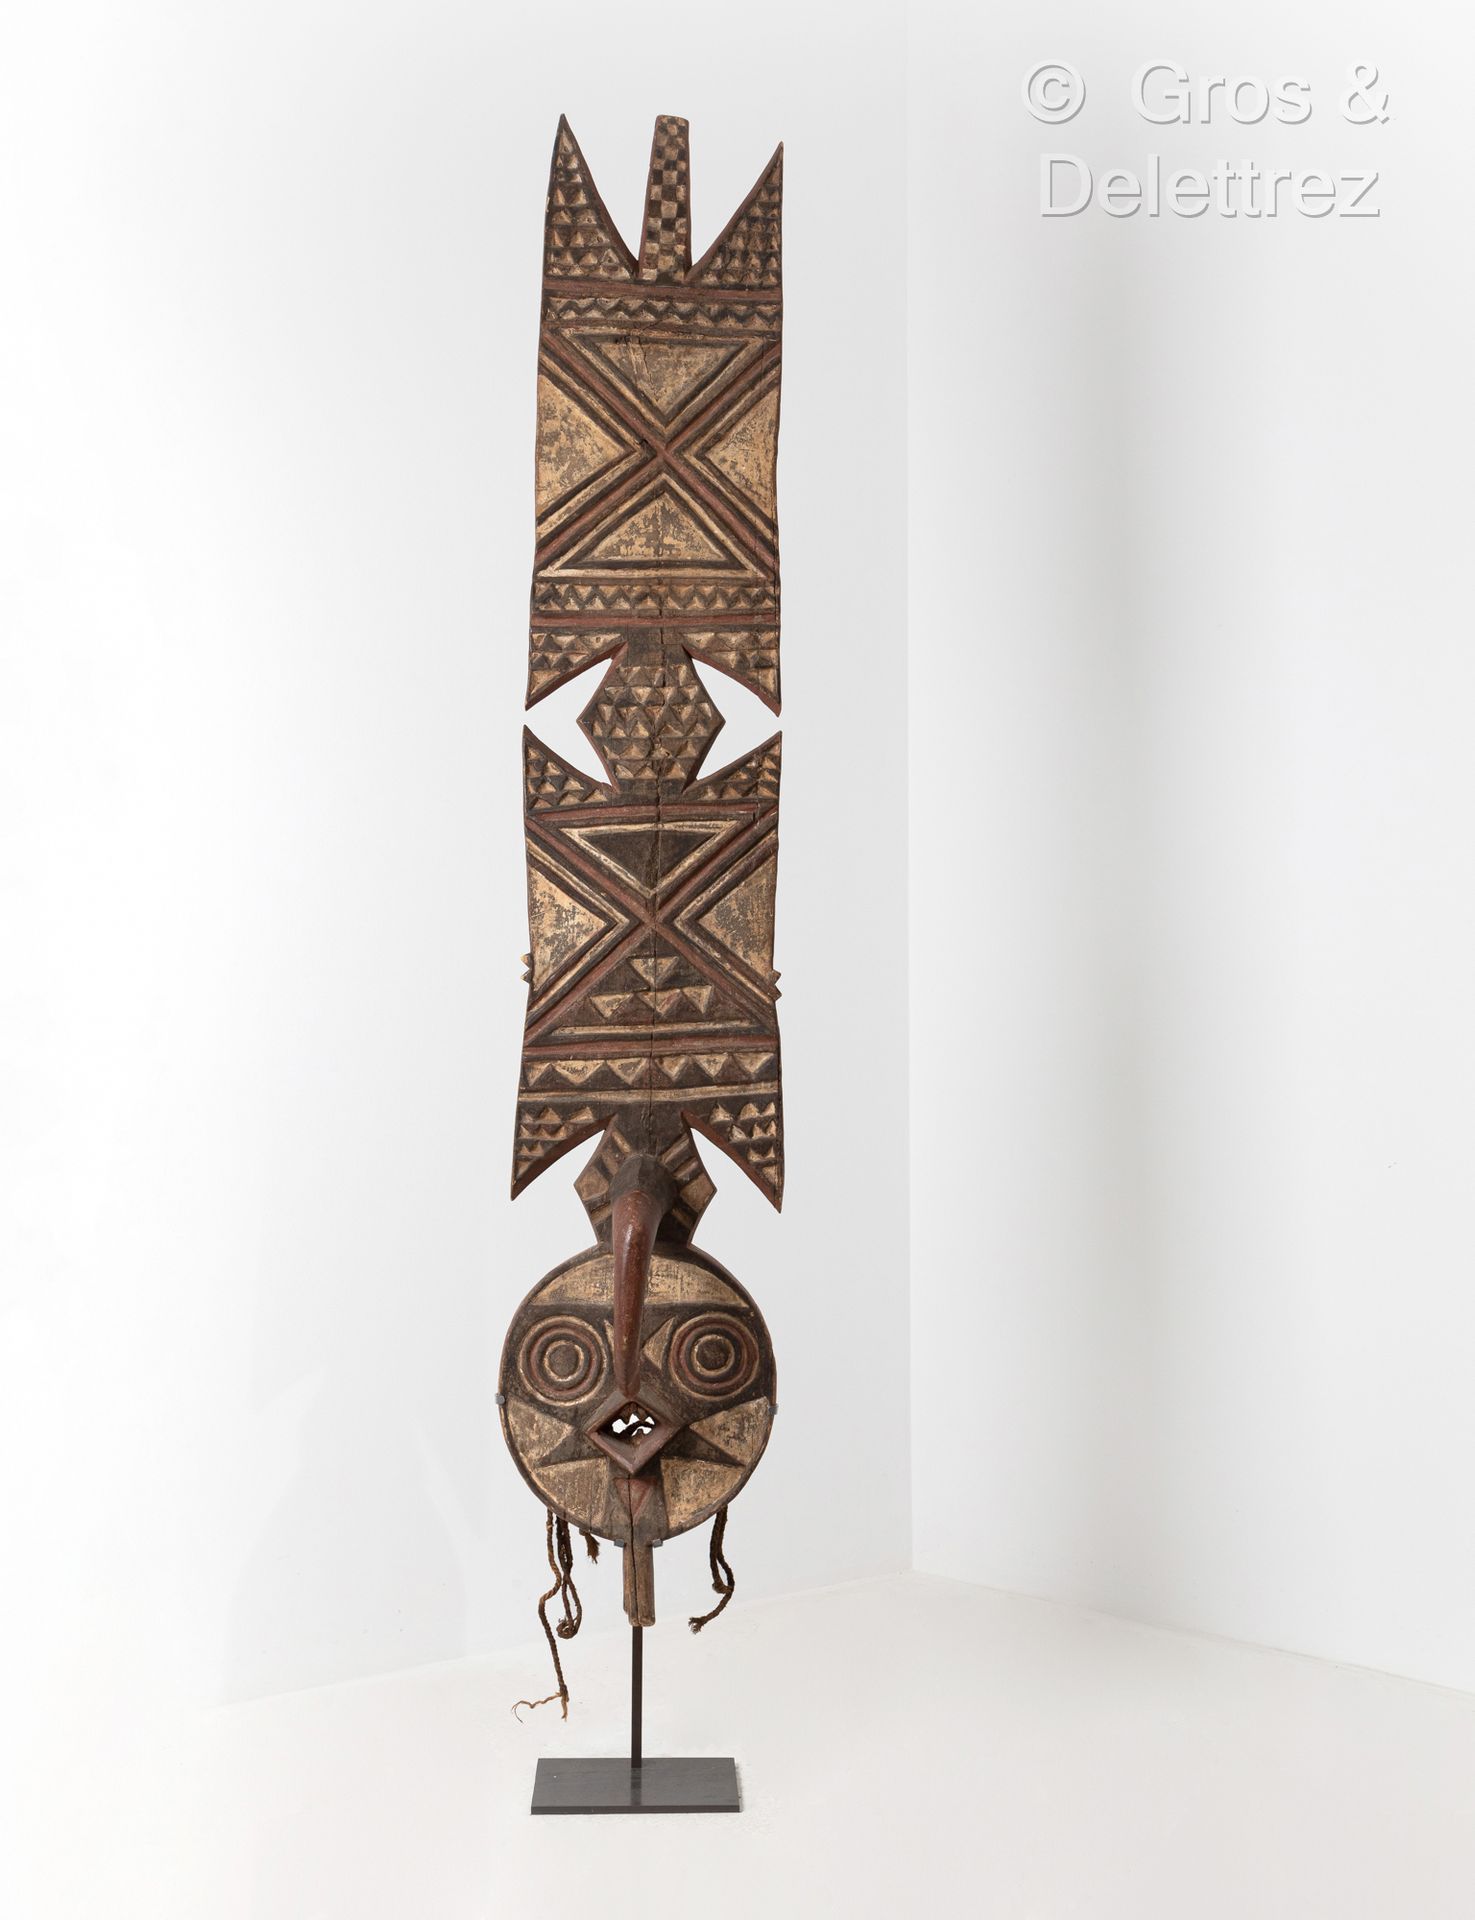 Null 木板面具。
布基纳法索布瓦人。
木材，颜料和植物纤维。
高度：220厘米

出处：本-马特罗斯收藏，纽约，在1960/1970年间就地收集